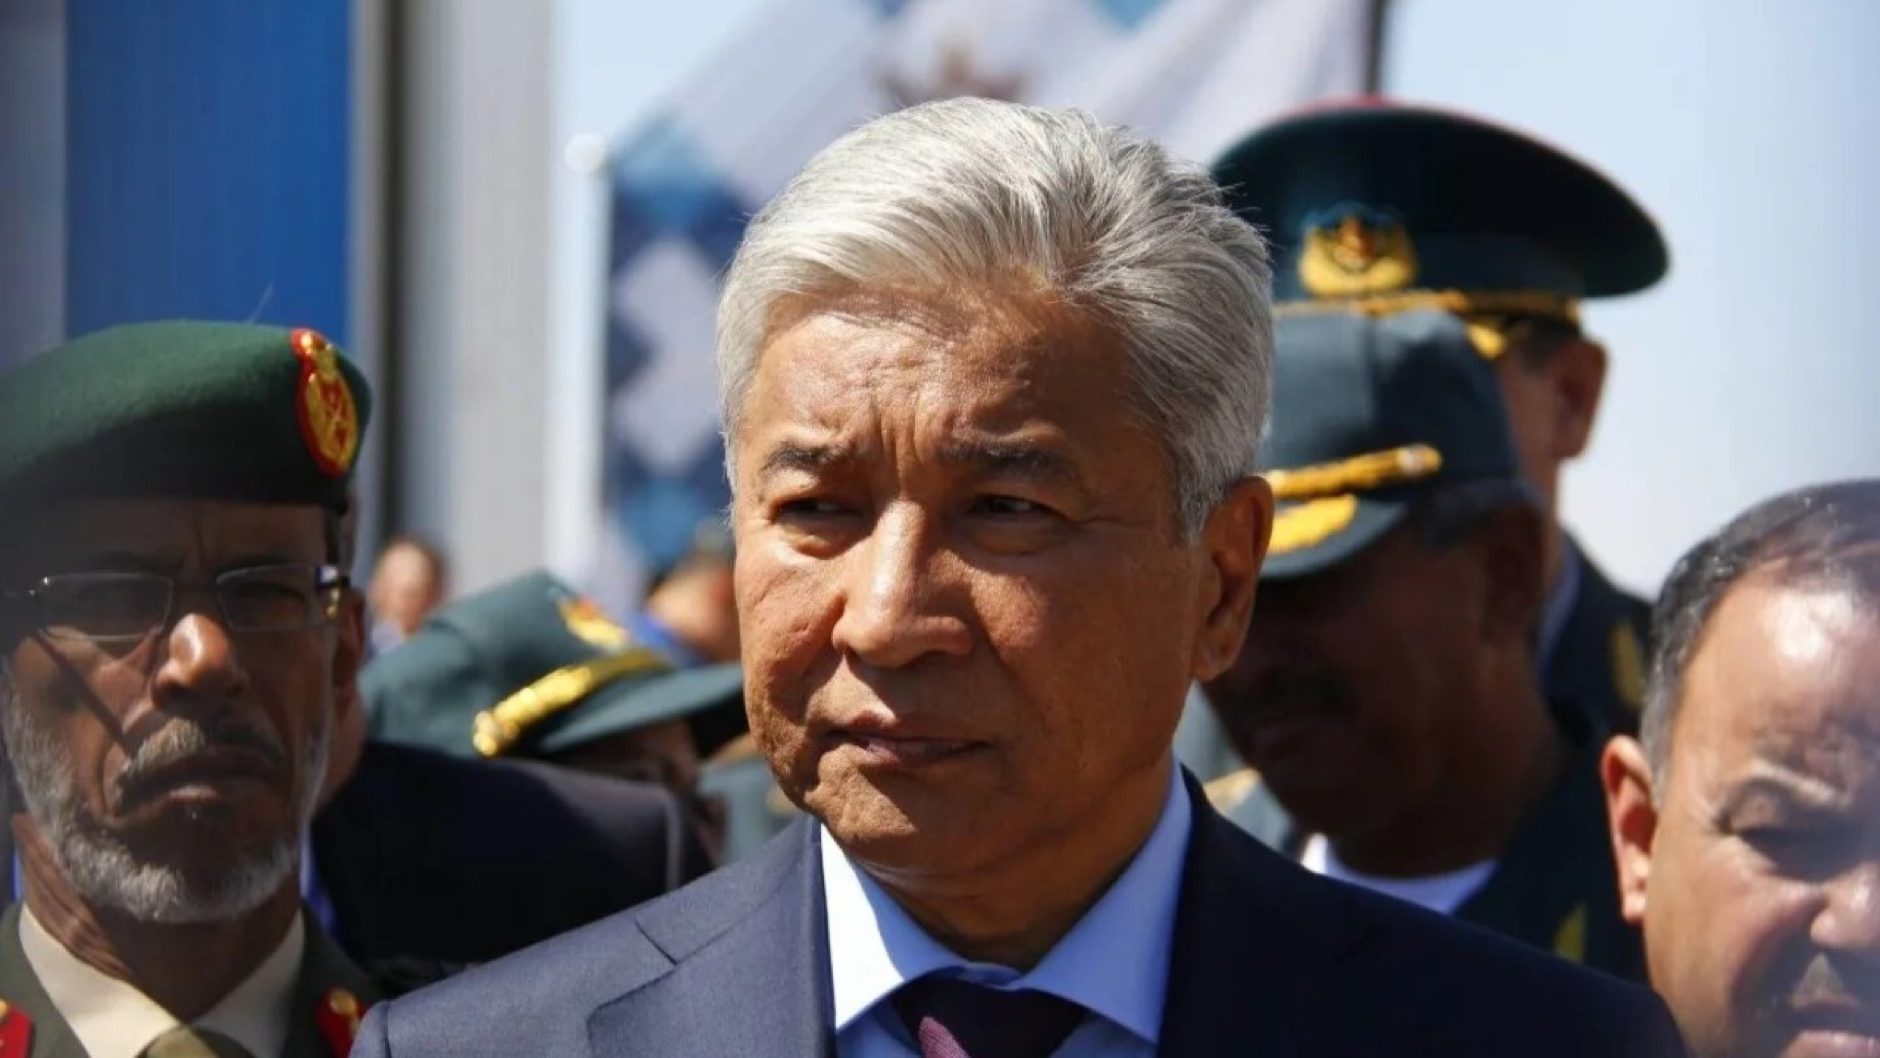 Бывших министров не бывает: как складывается судьба казахстанских политиков после отставки. Часть 2